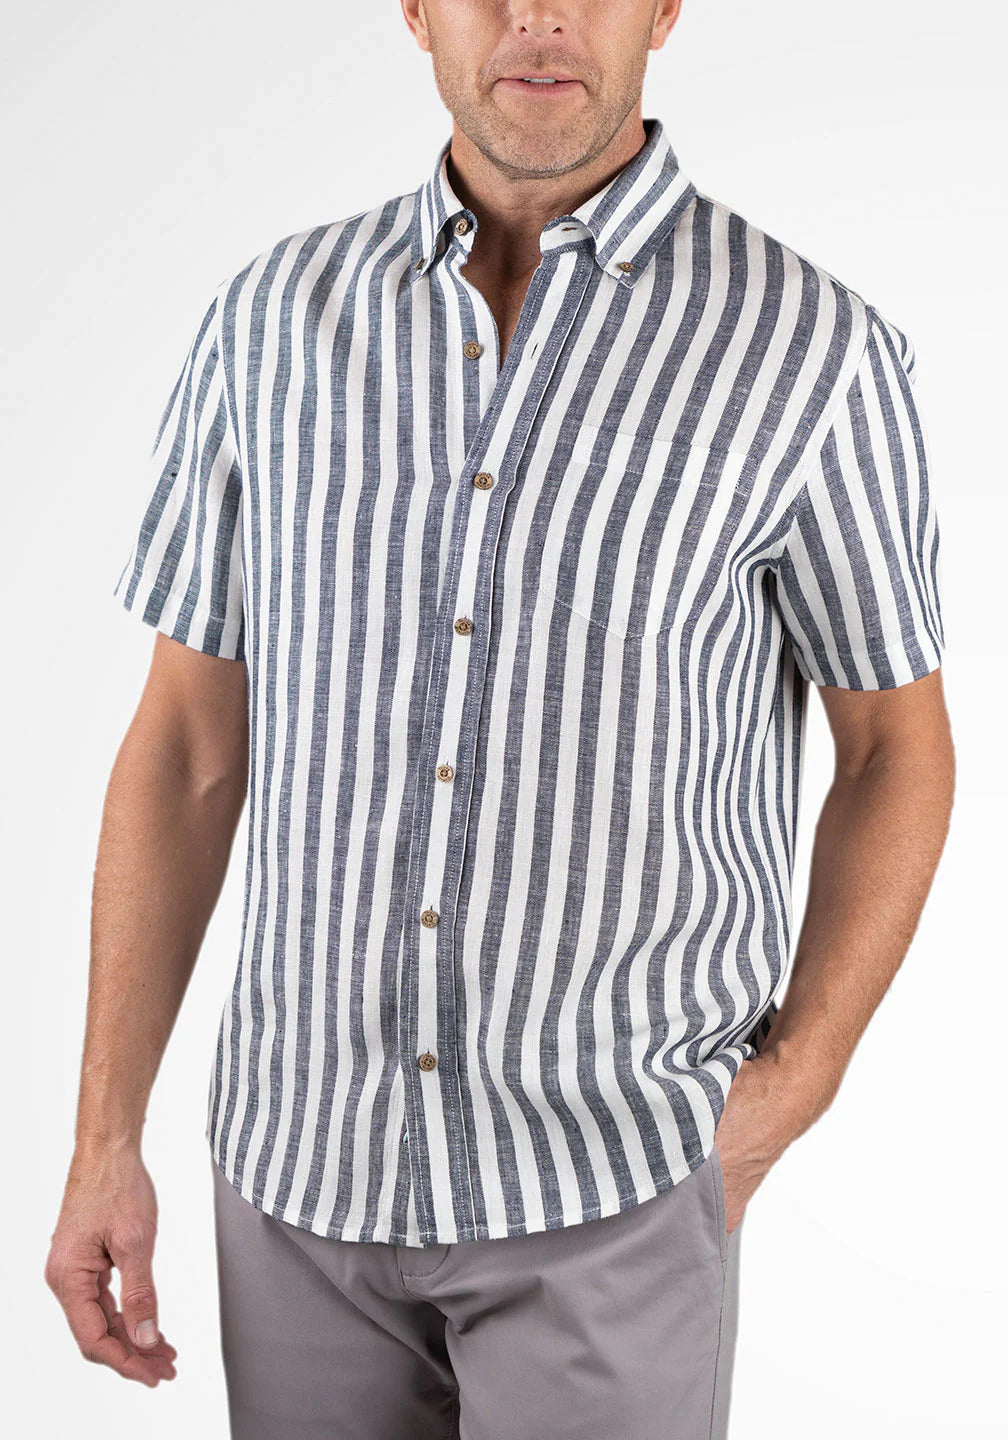 Tailor Vintage PUREtec Cool Linen Cotton Short-Sleeve Shirt – StatelyMen